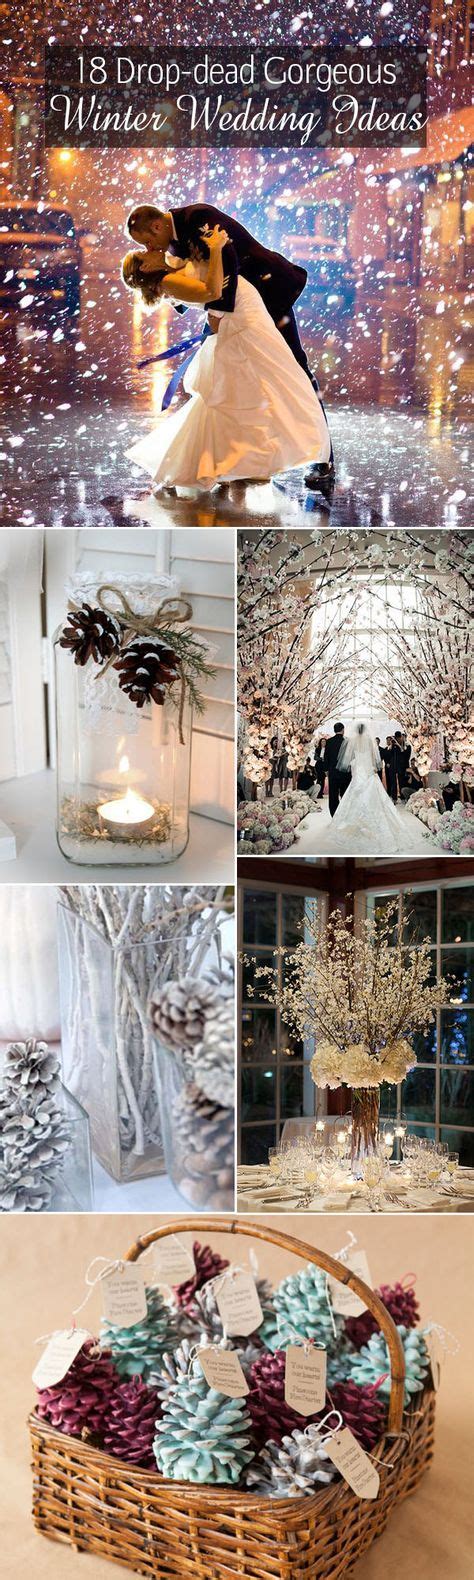 22 Winter Wedding Ideas In 2021 Winter Wedding Wedding Winter